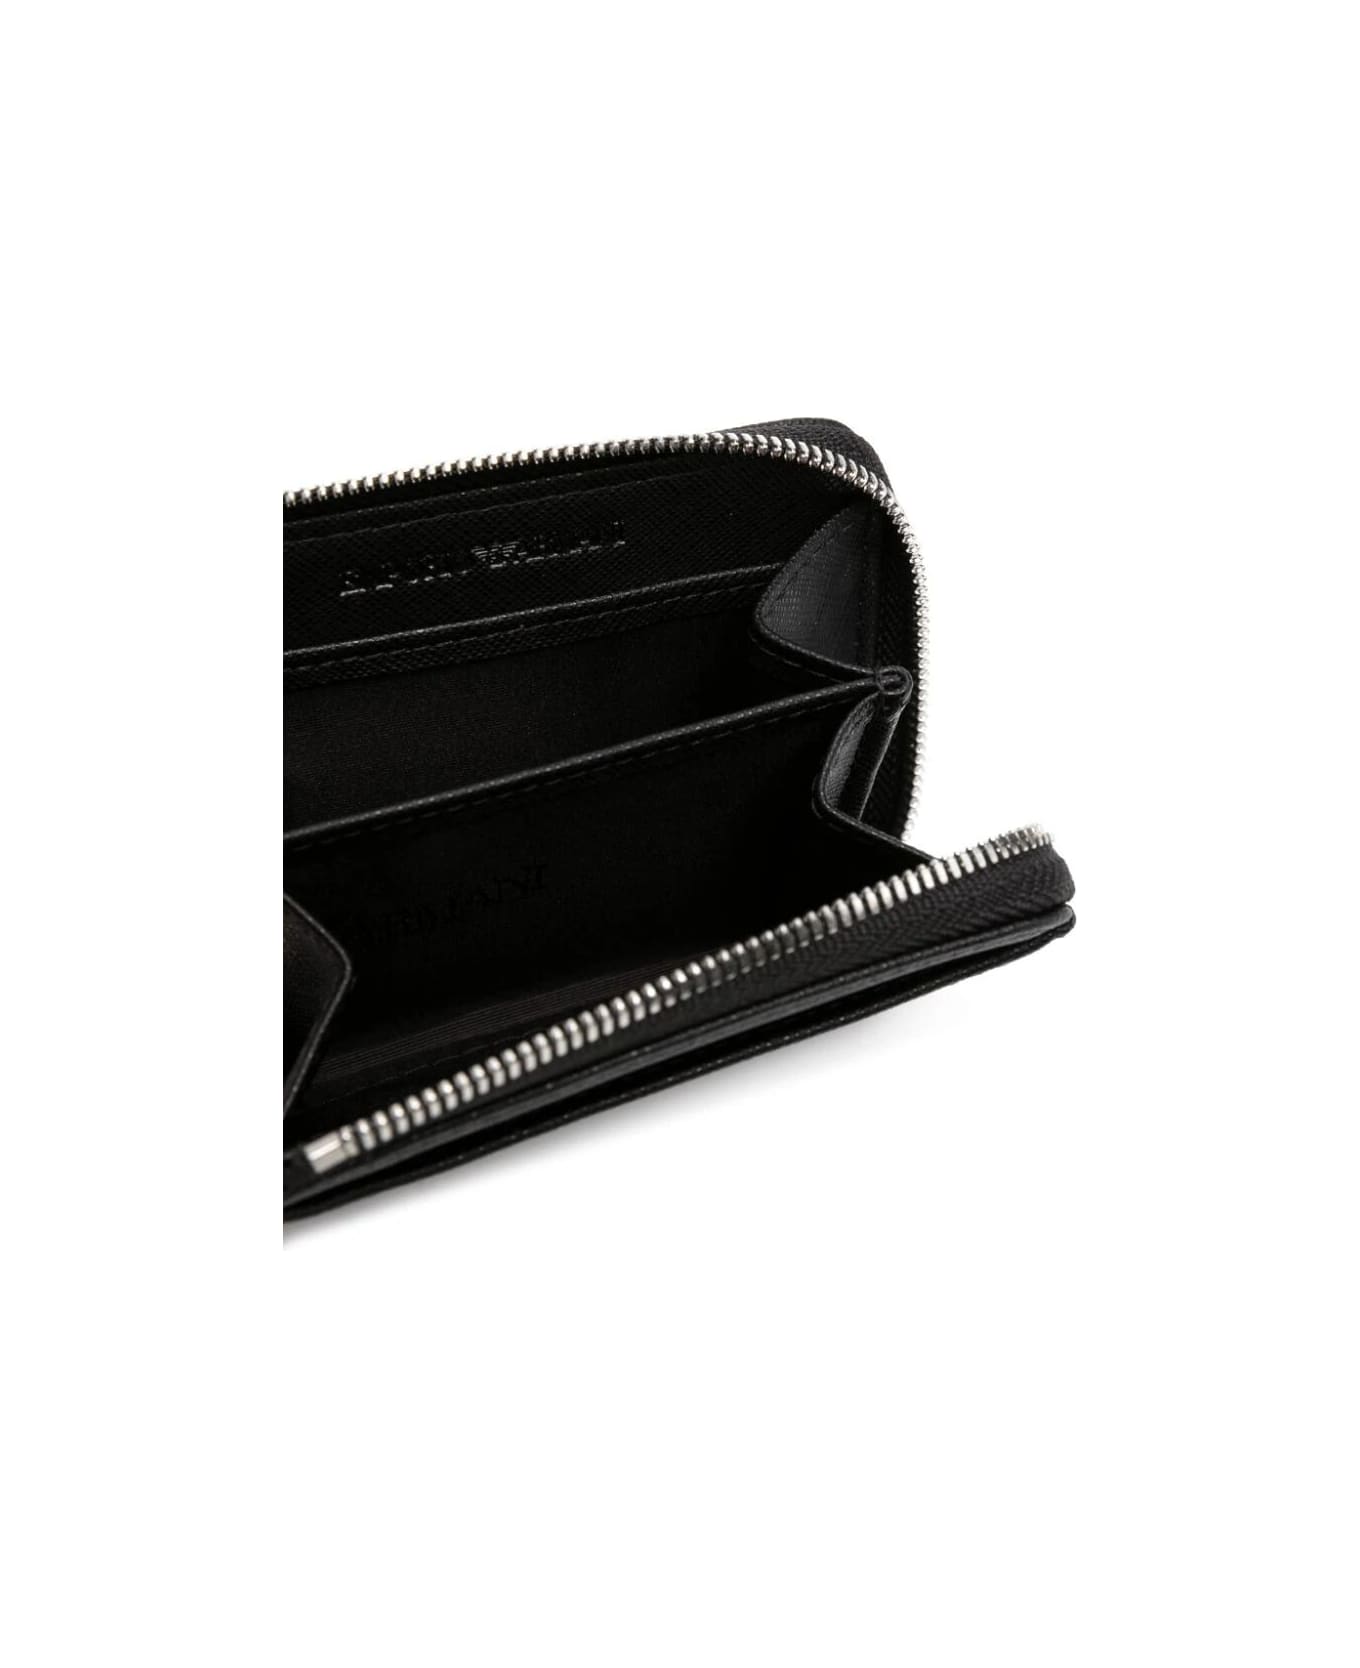 Emporio Armani Man`s Compact Wallet - Black